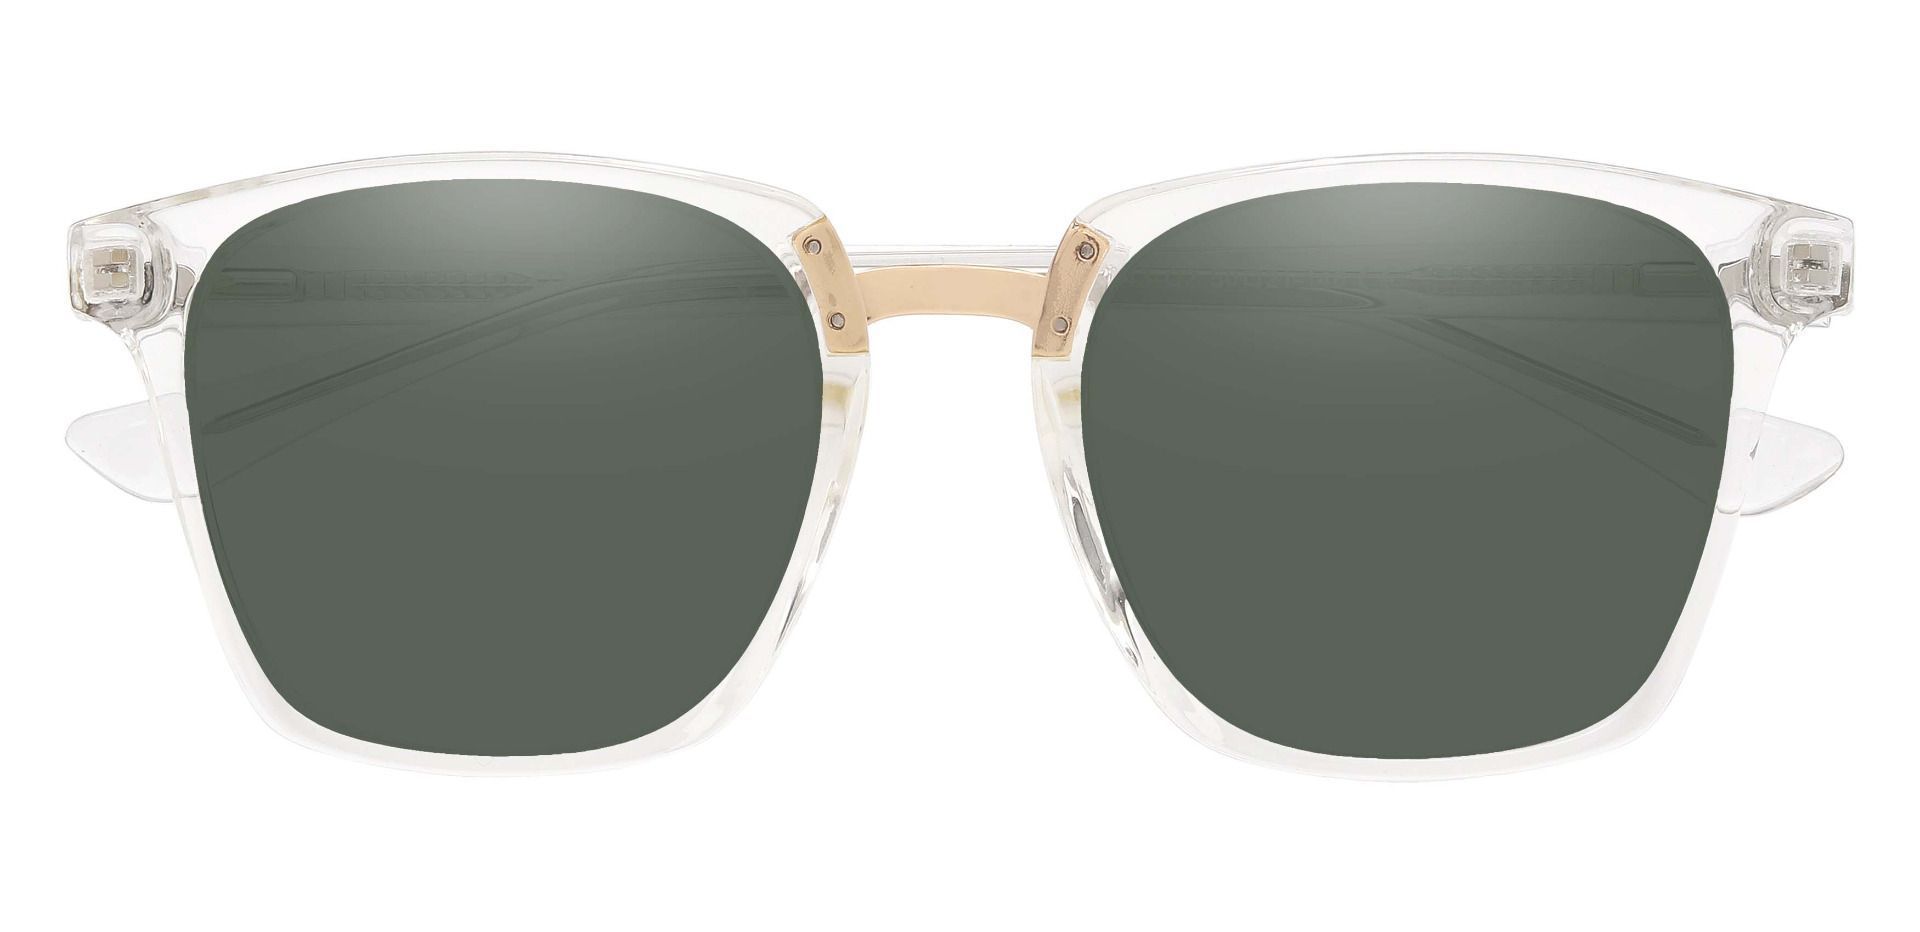 Delta Square Progressive Sunglasses - Clear Frame With Green Lenses